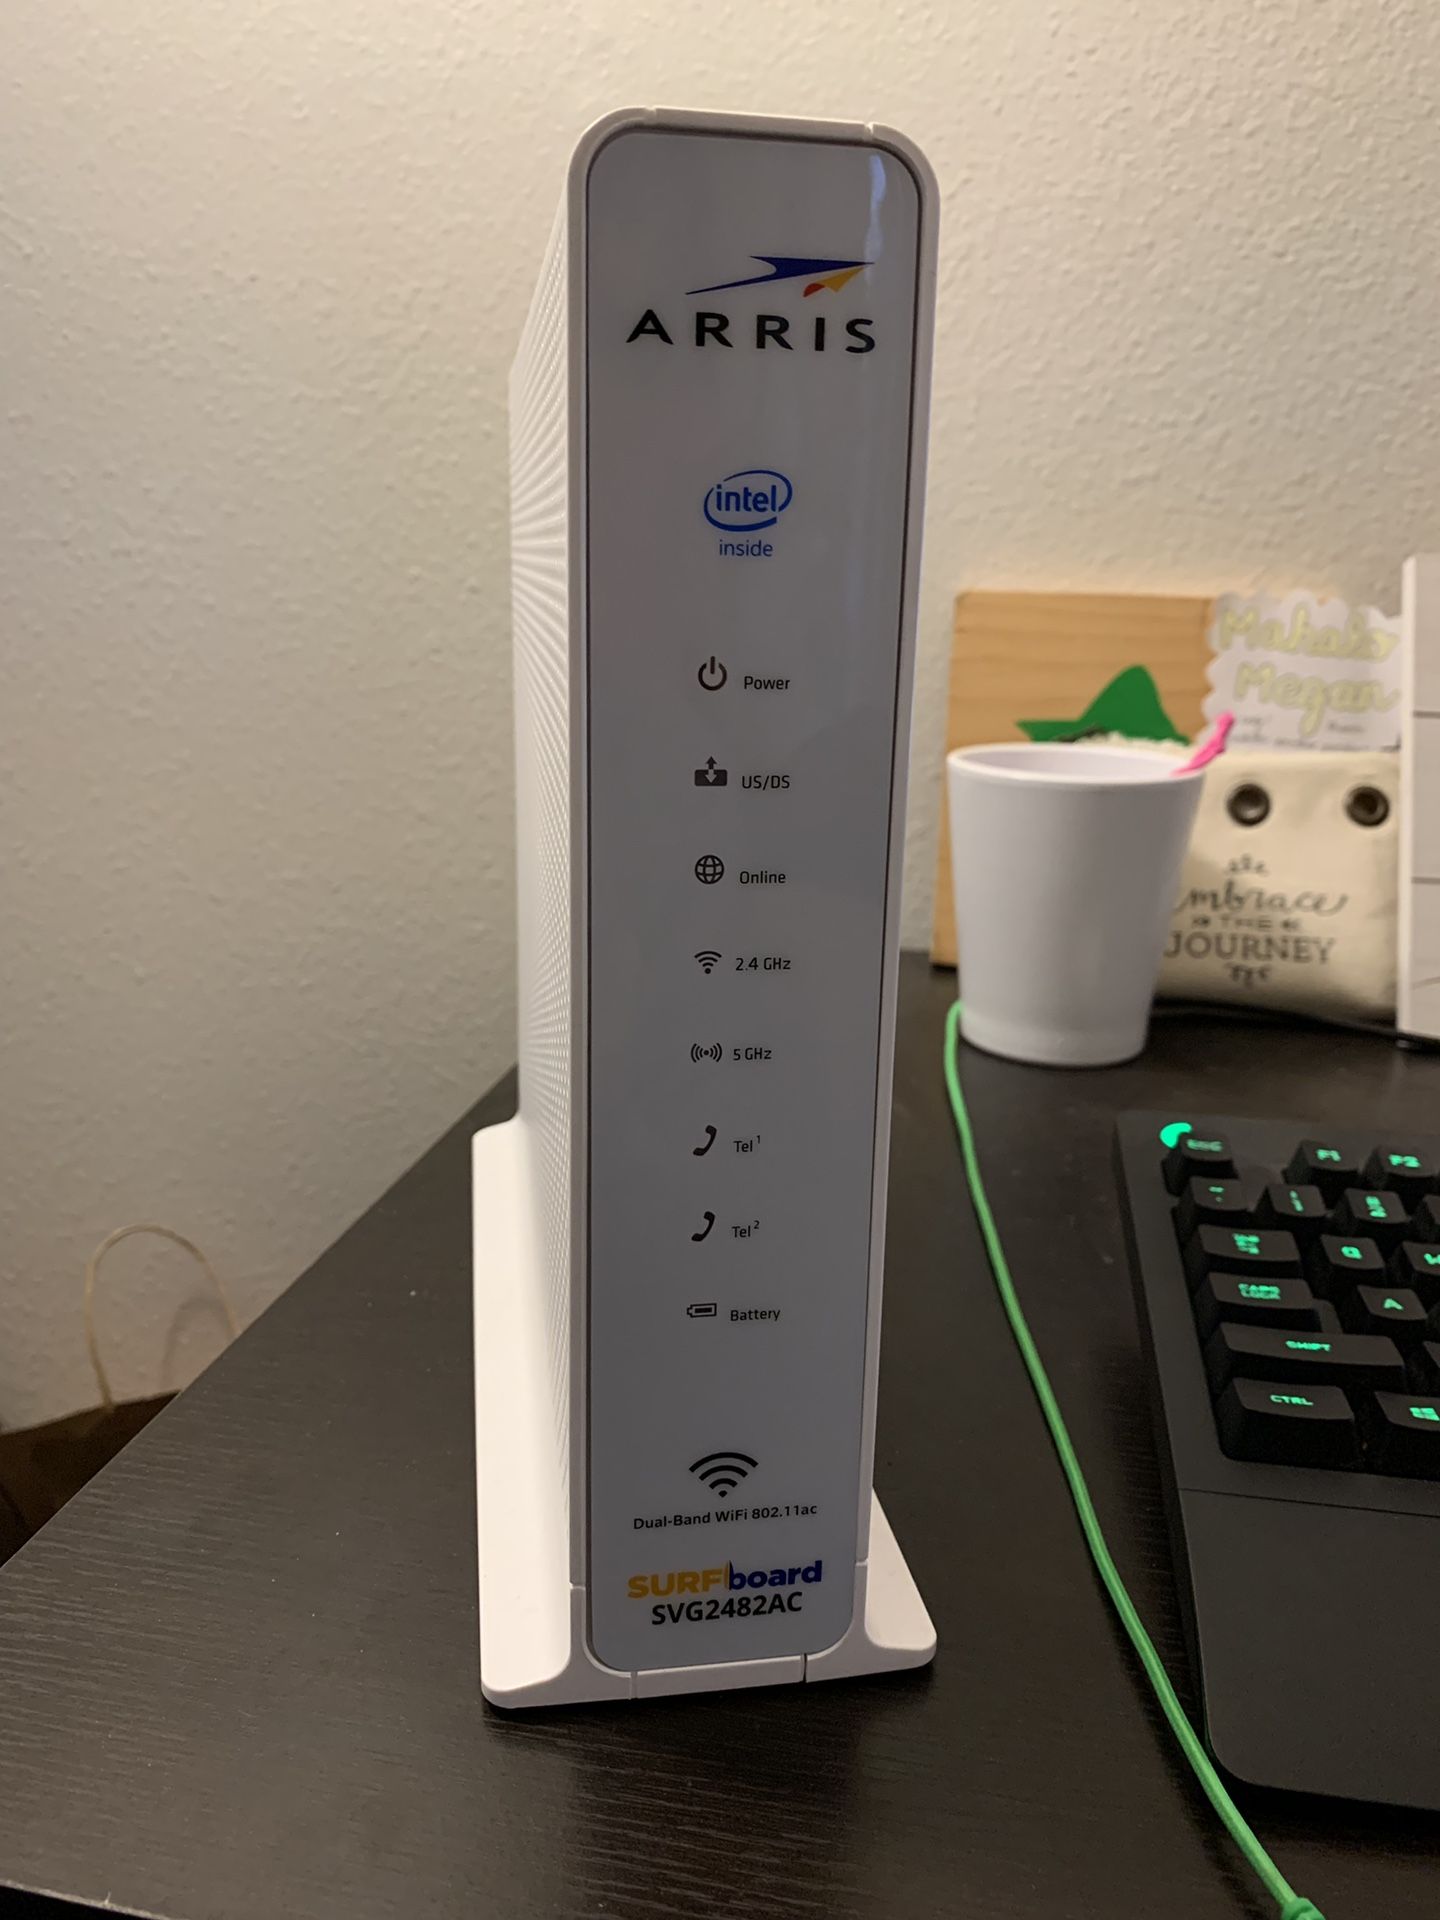 ARRIS SurfBoard WiFi Modem Model SCG2482AC